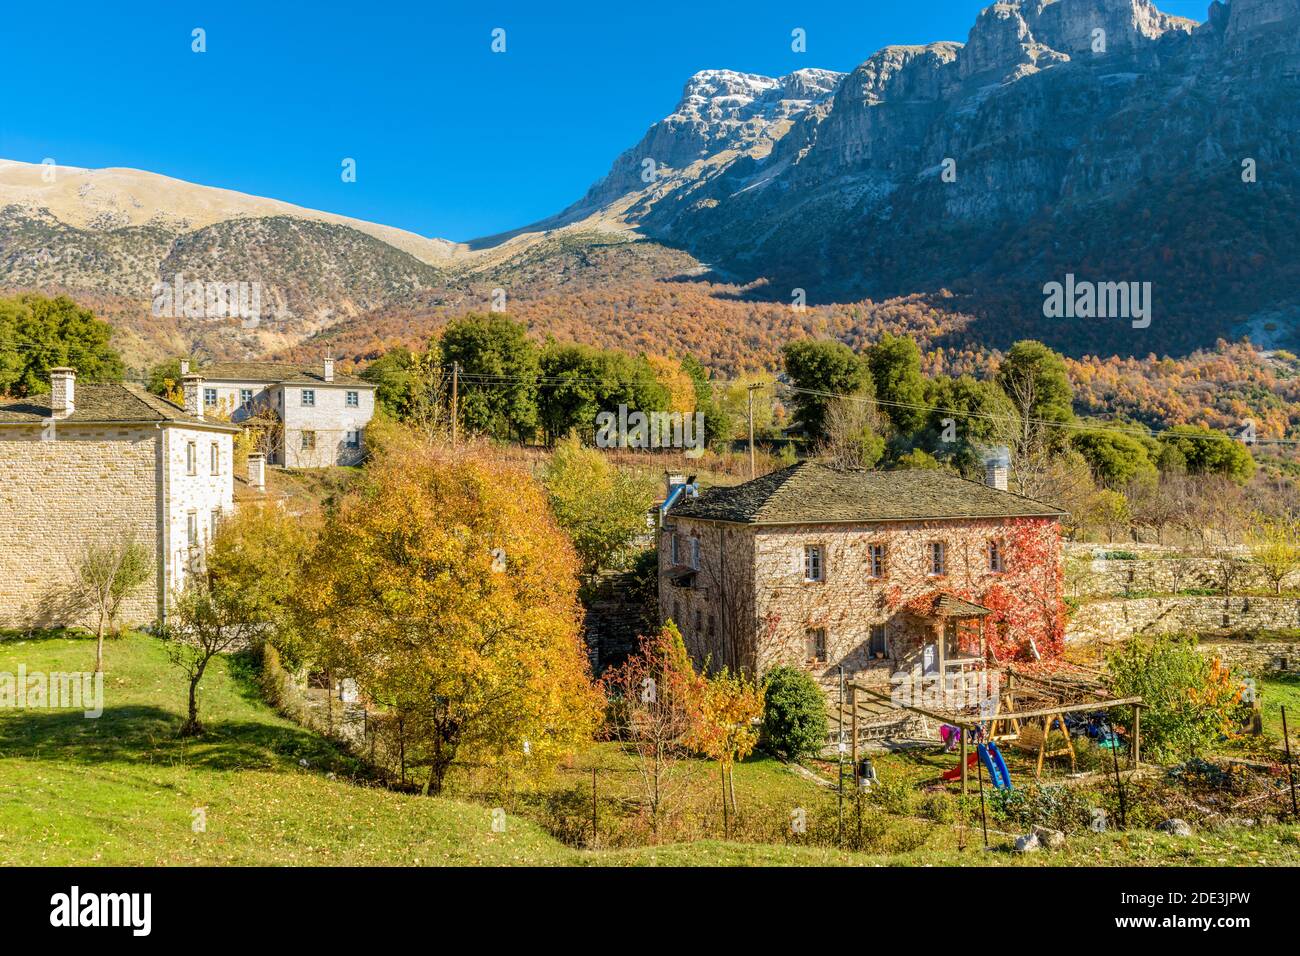 Architettura tradizionale con edifici in pietra e montagna astraka come sfondo Durante la stagione autunnale nel villaggio di Papigo a zagori Grecia Foto Stock